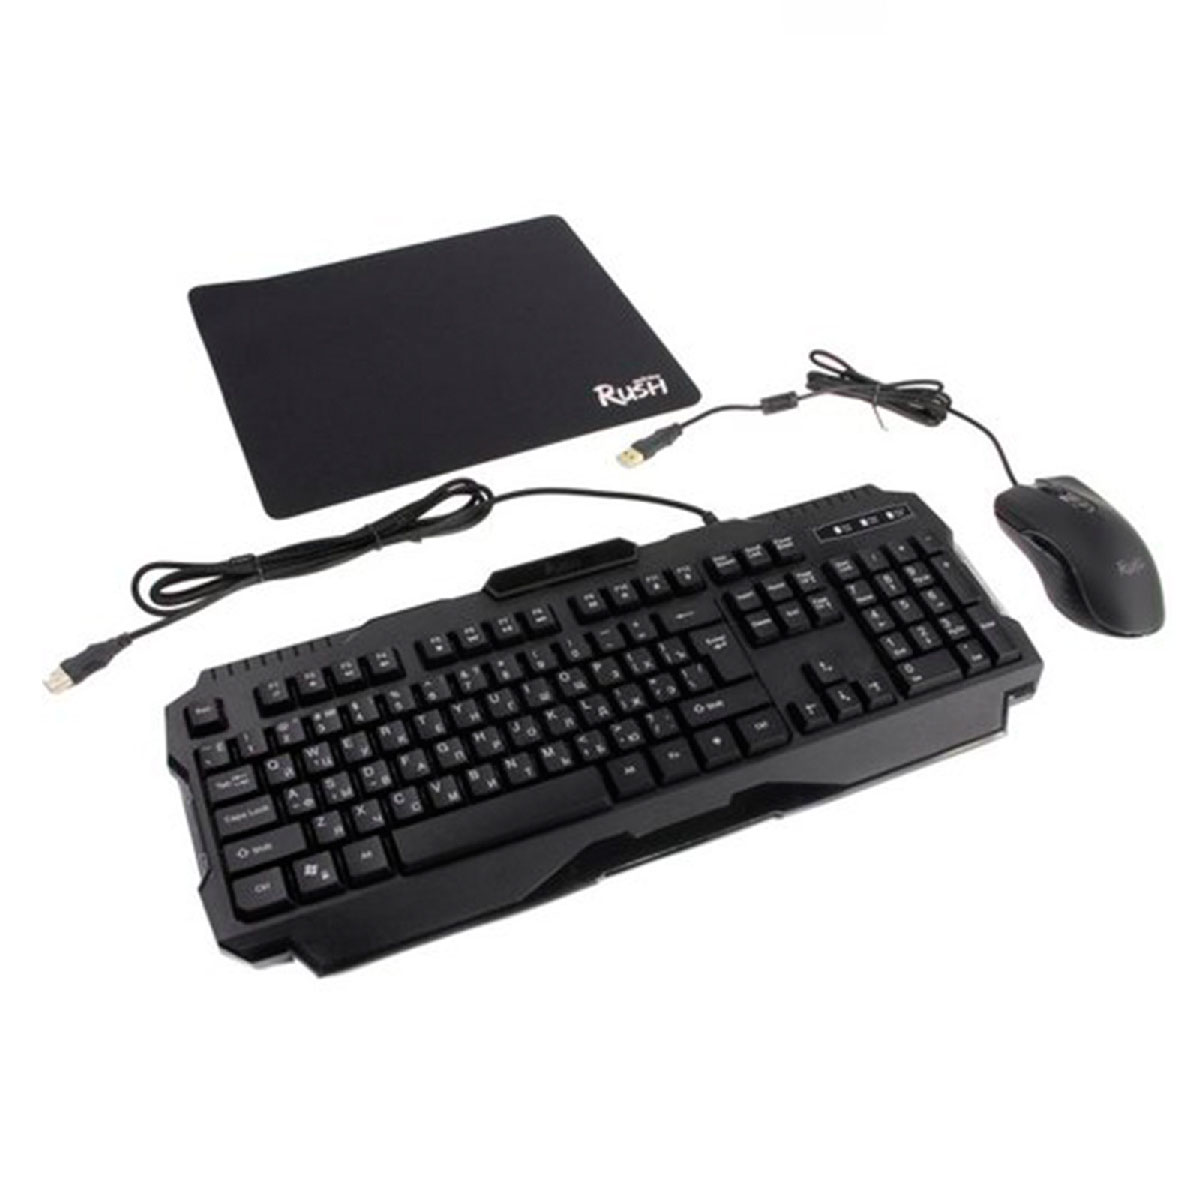 Игровой набор мышь, клавиатура, коврик, Smartbuy RUSH SHOTGUN, USB, игровая, с подсветкой, цвет черный